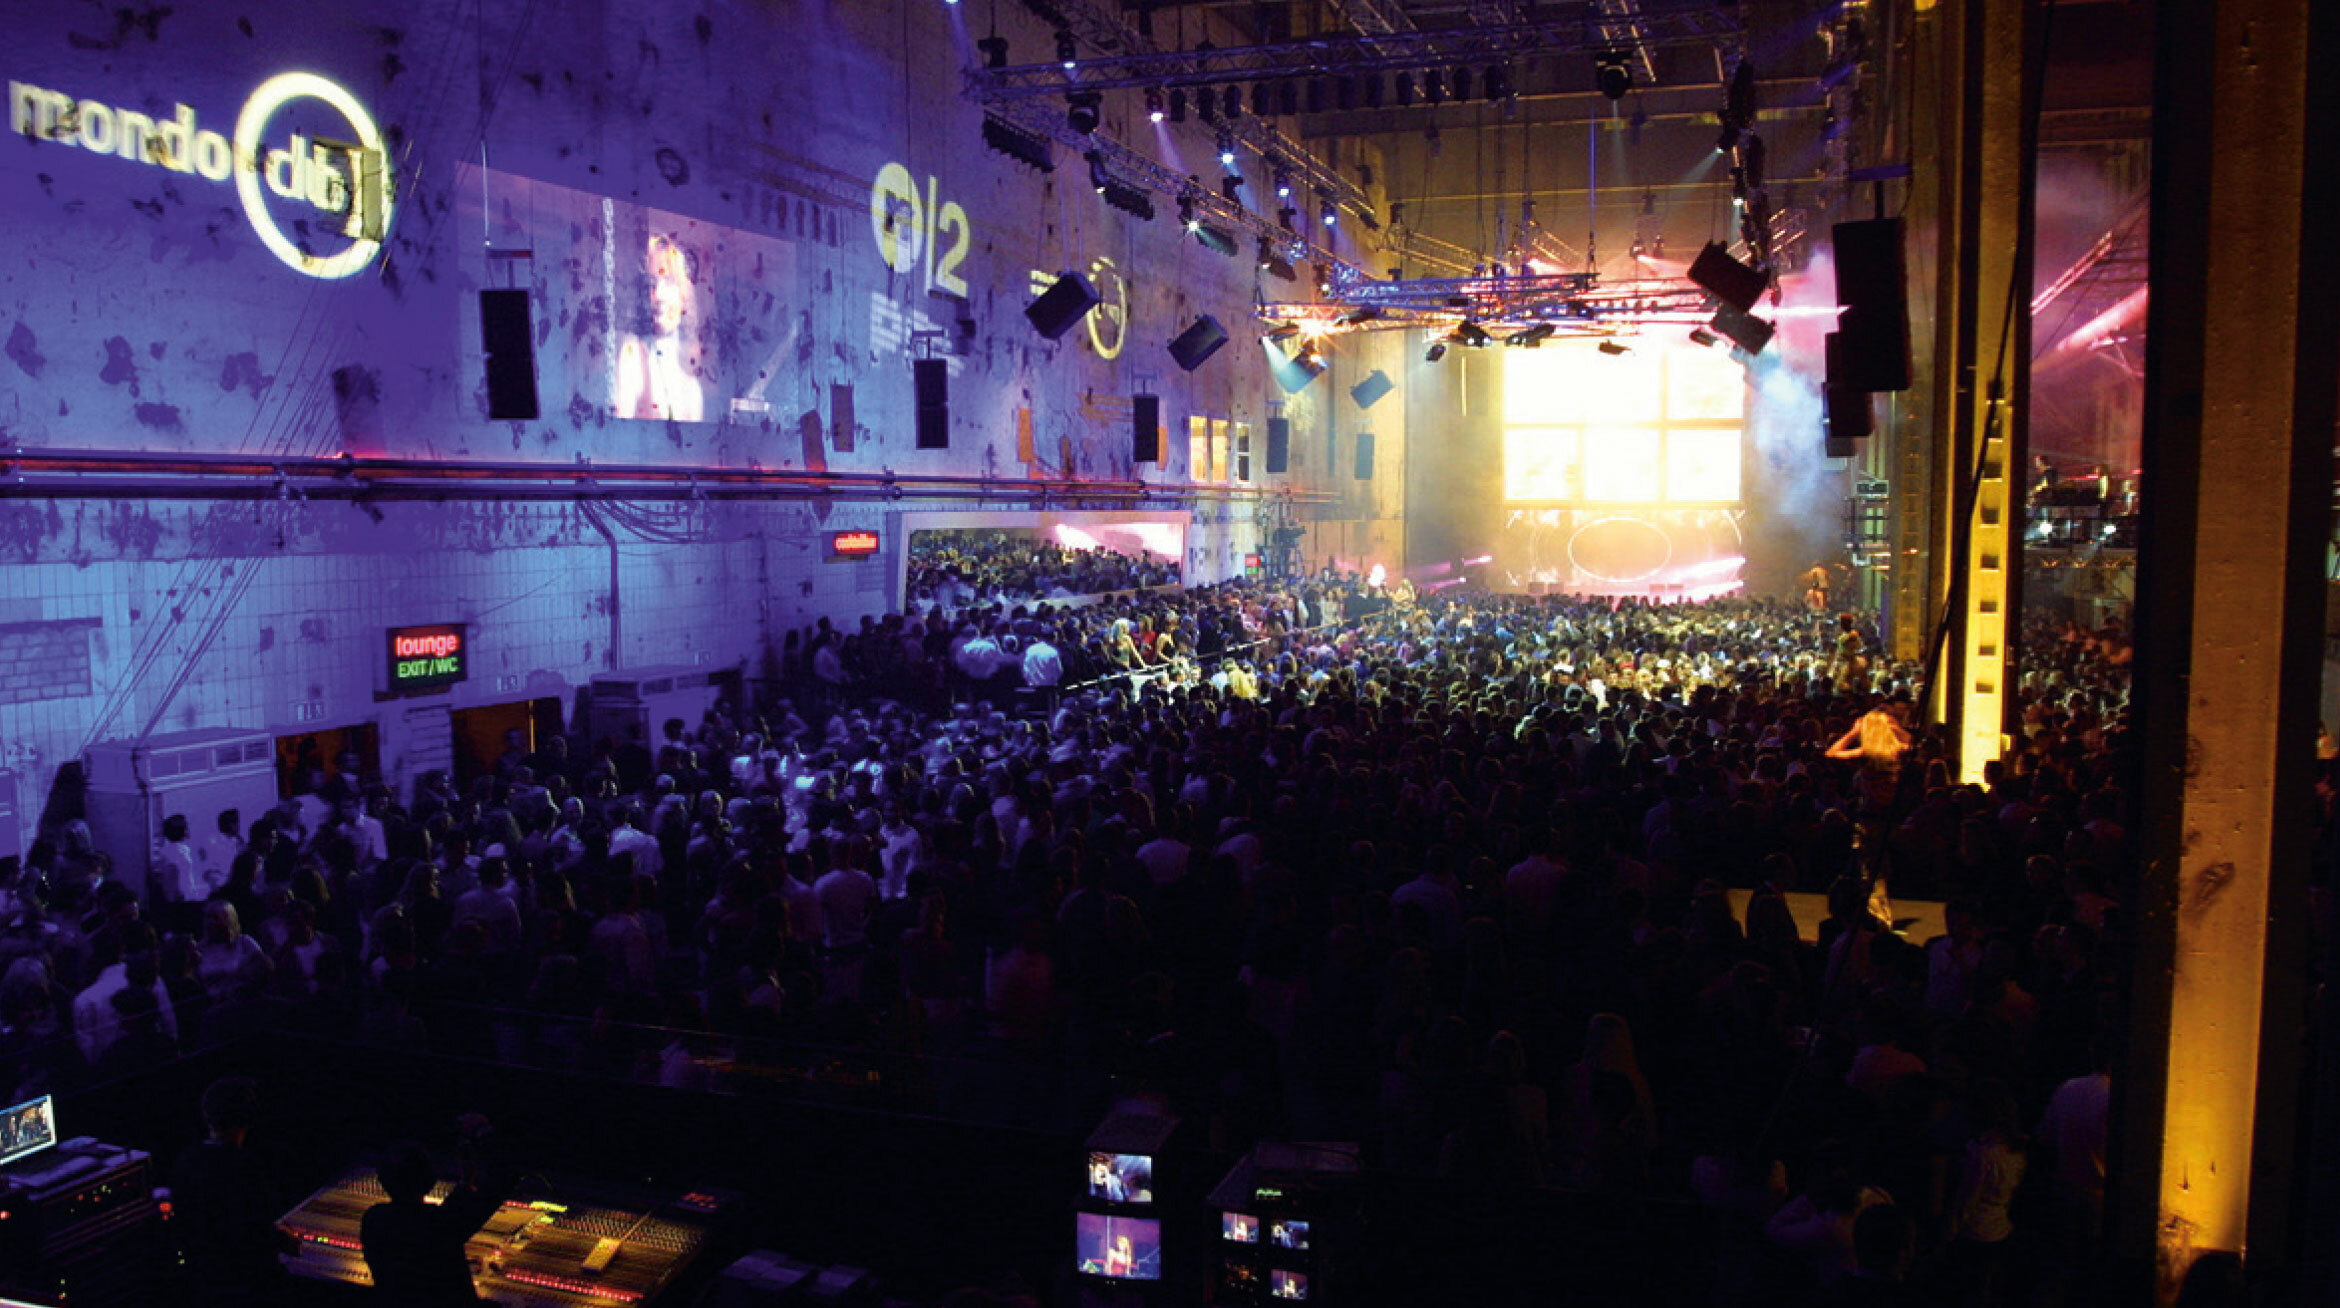 Foto eines Events in der Autostadt. Eine mit Menschen gefüllte Halle ist in lilafarbenes Licht getaucht. Die Menschen wenden sich zu einer Bühne.